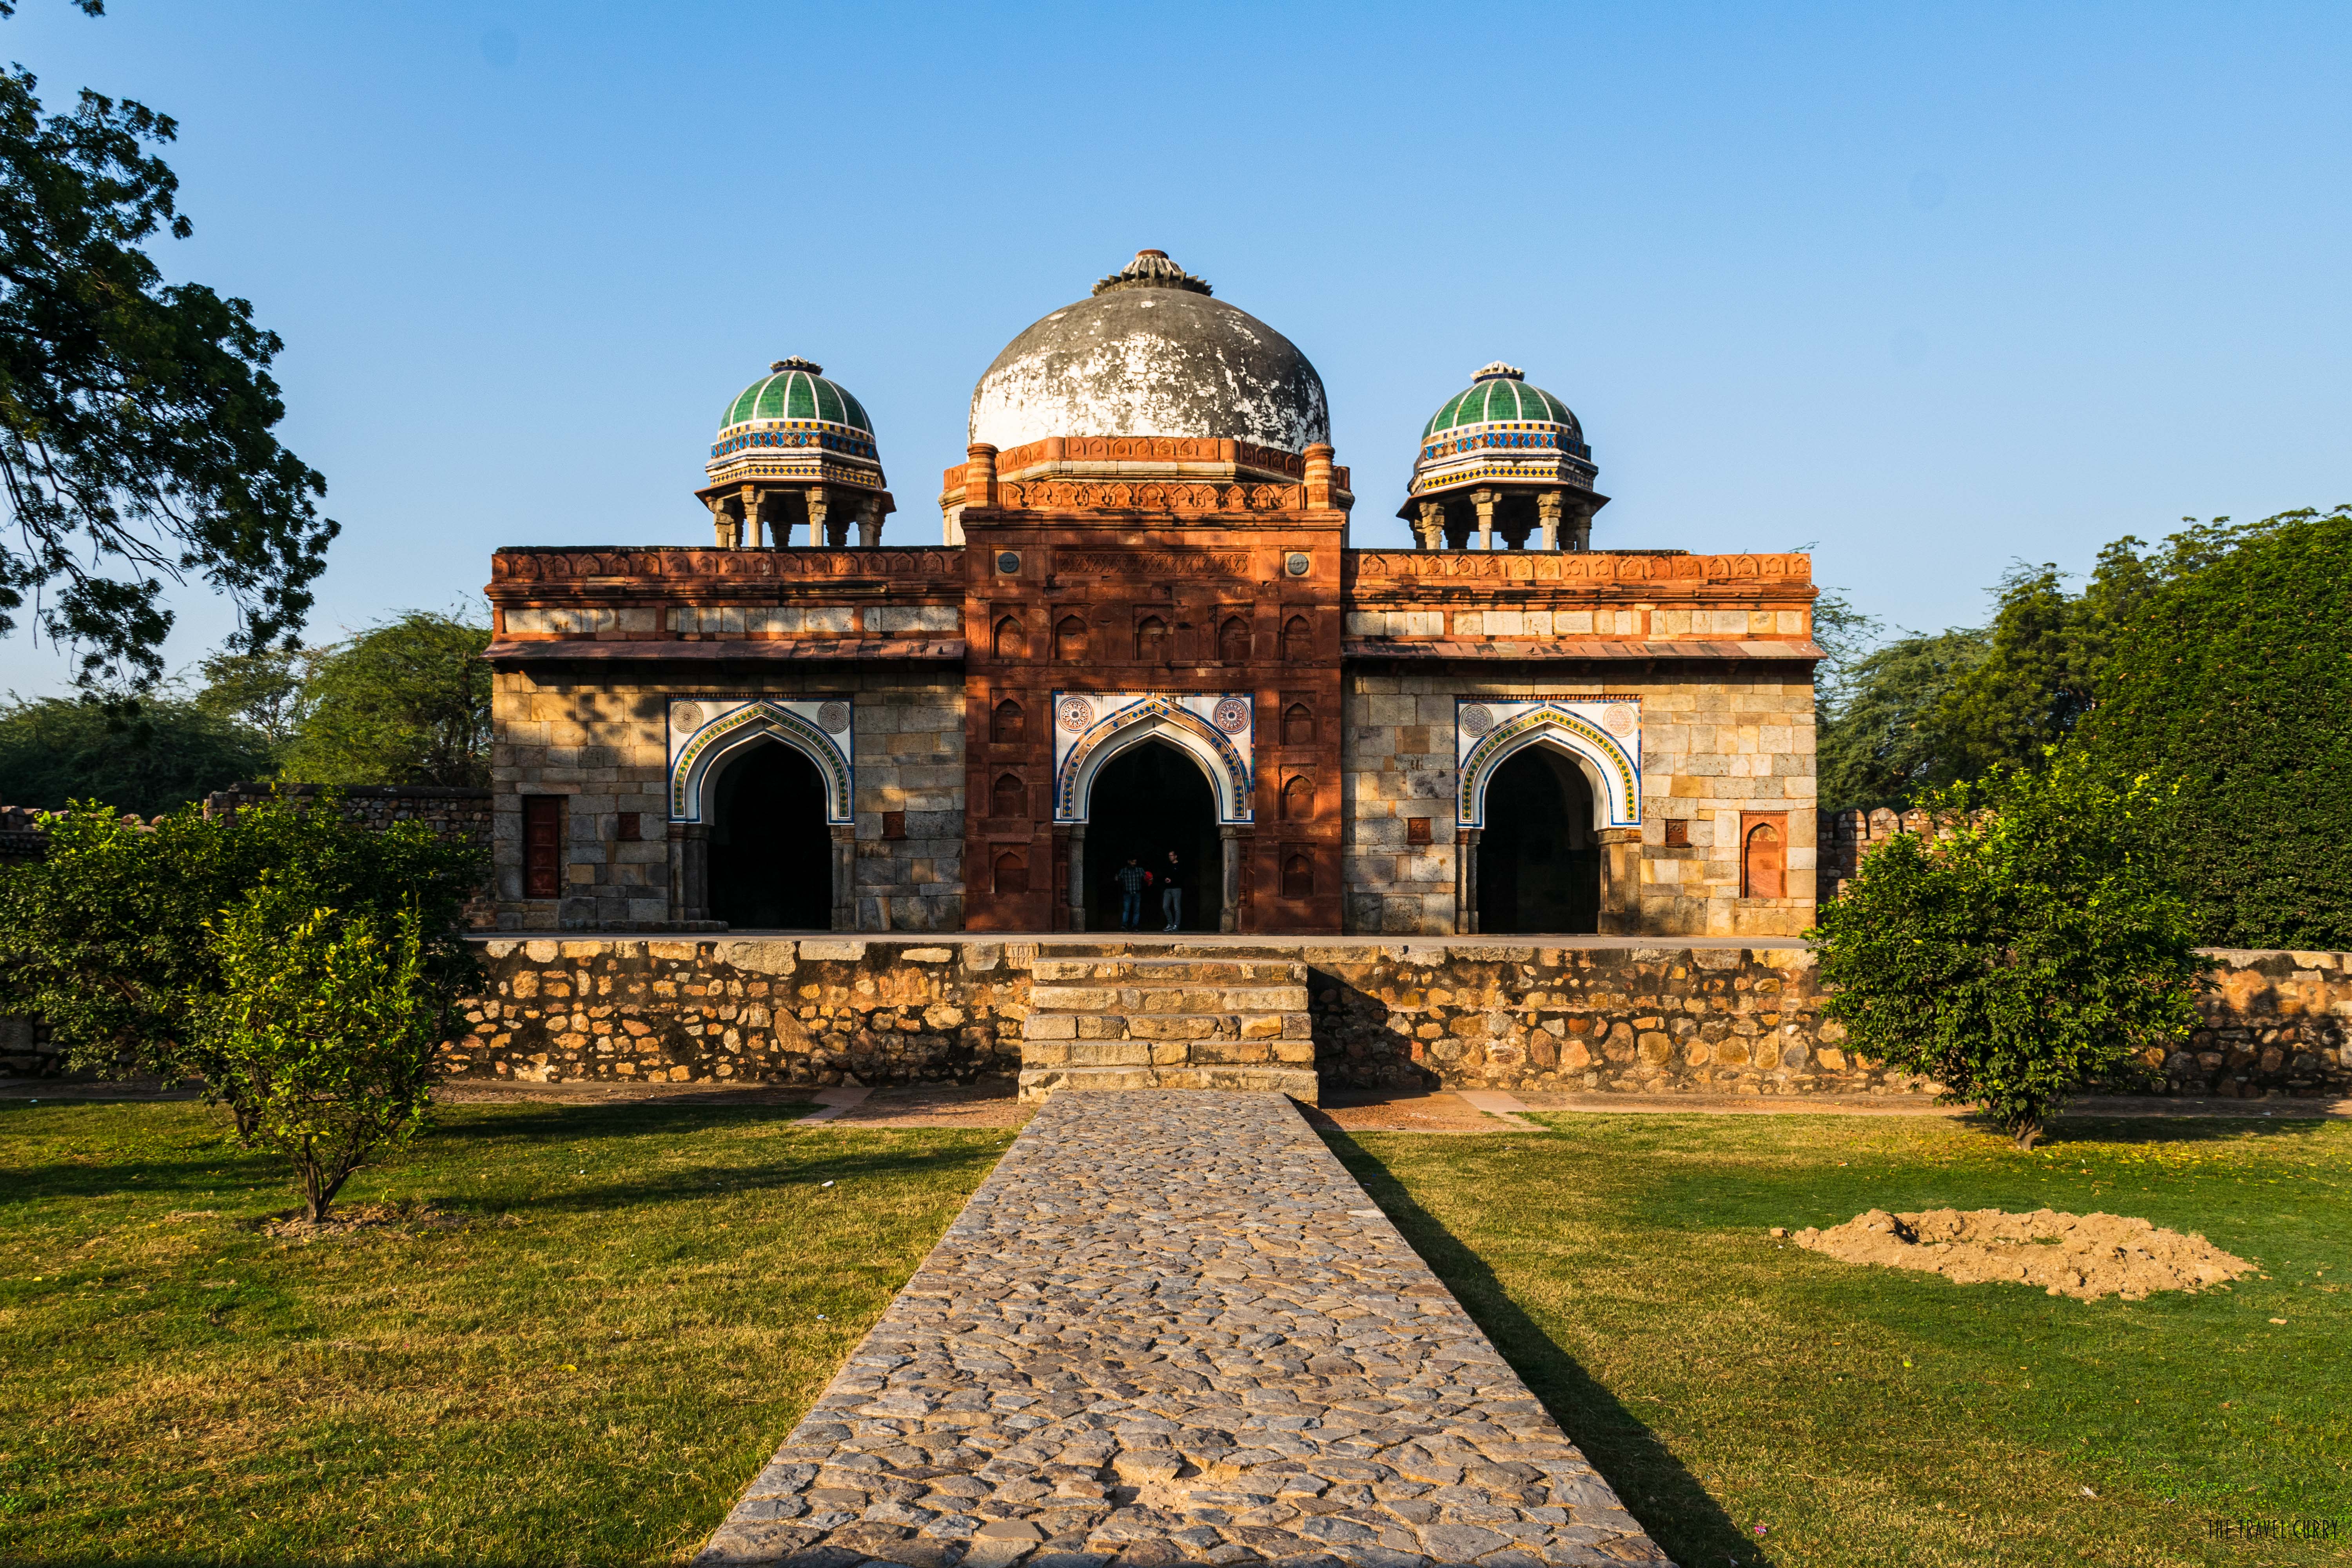 Isa Khan's Mosque